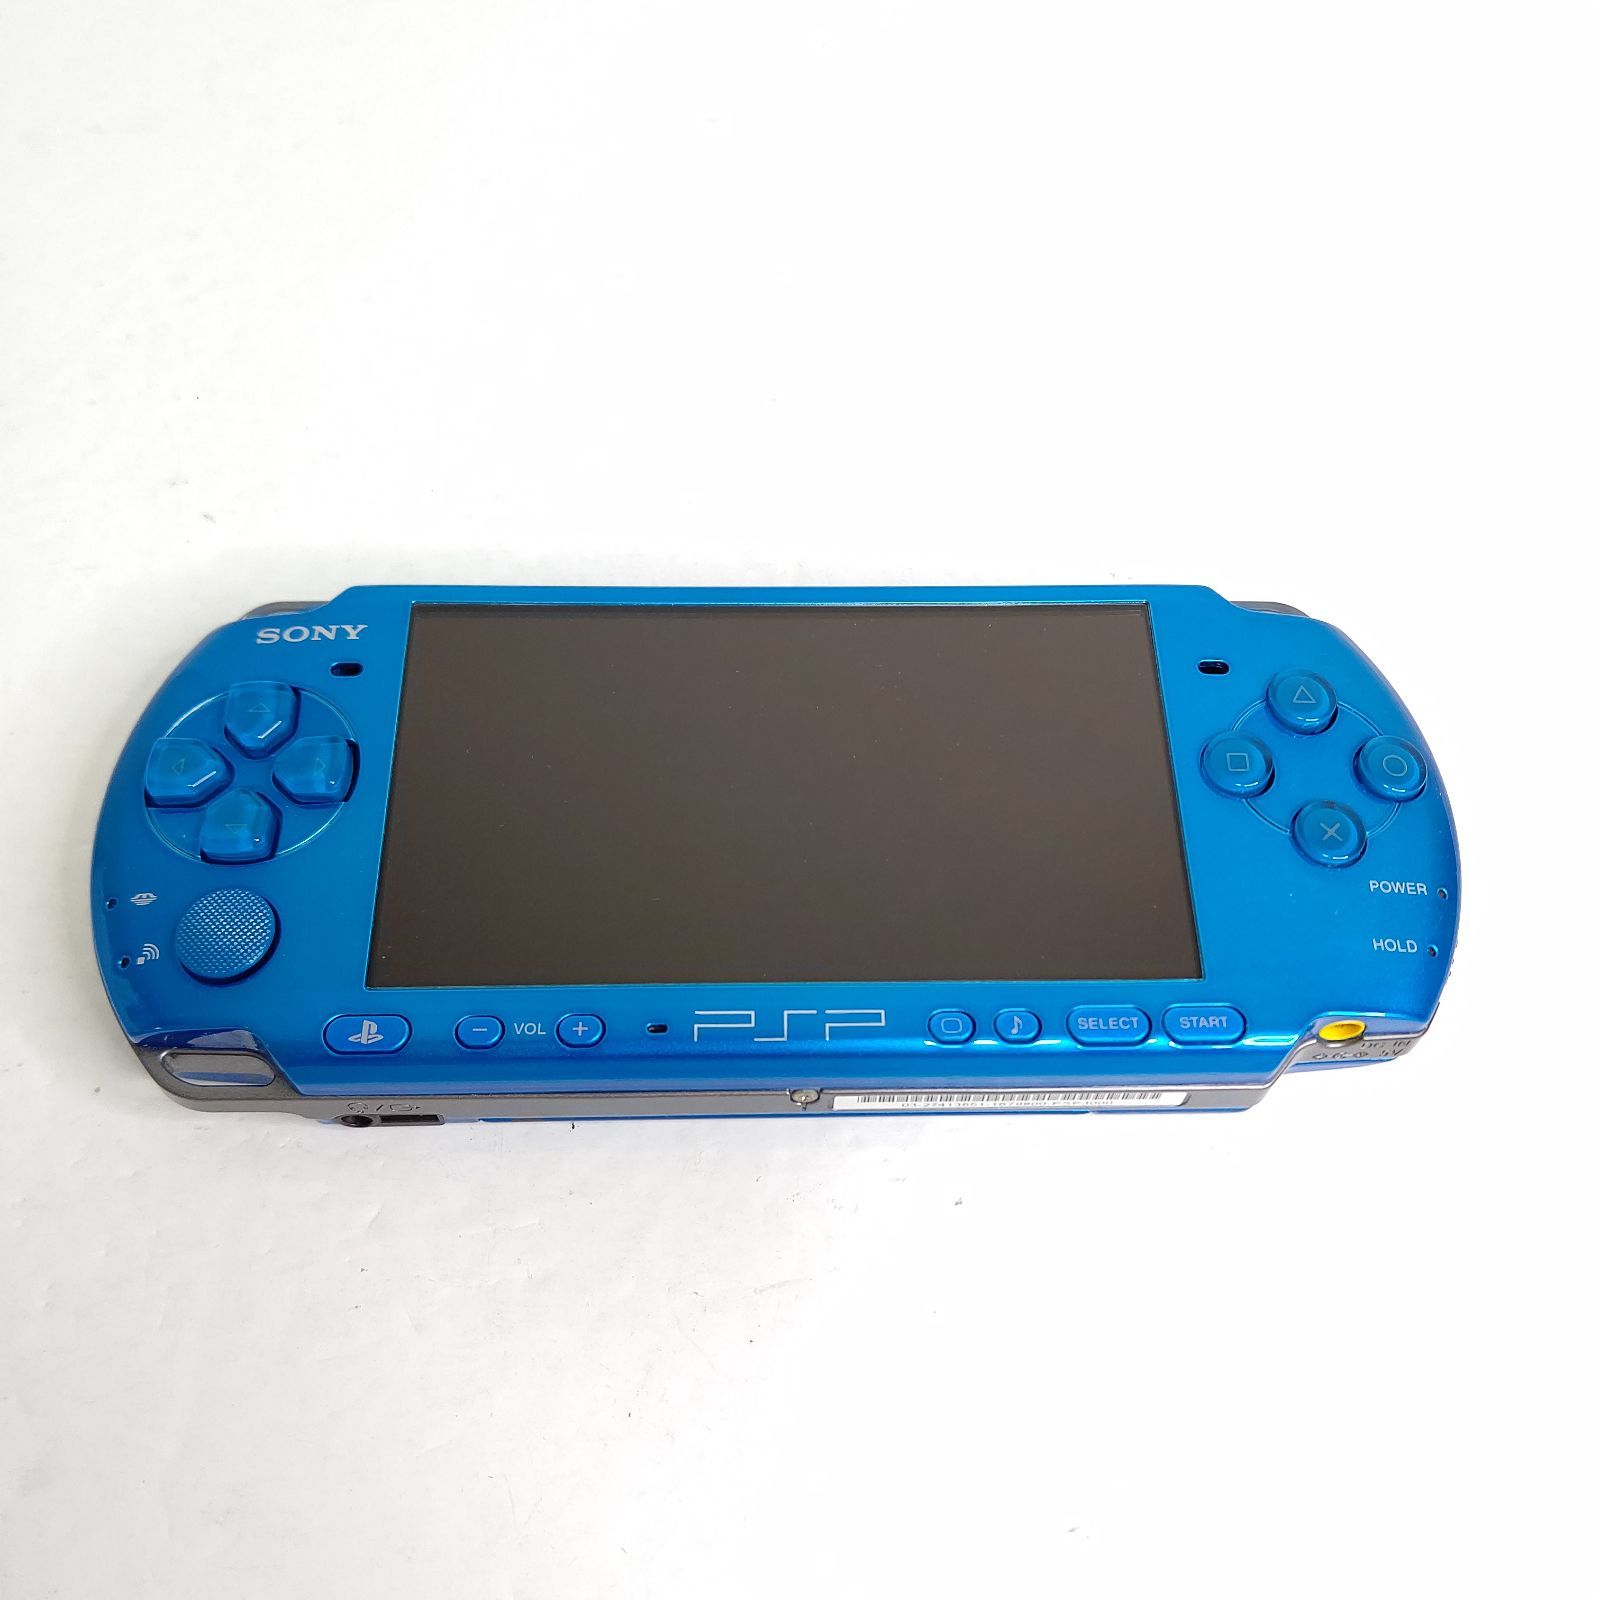 美品PSP3000バイブラント・ブルー